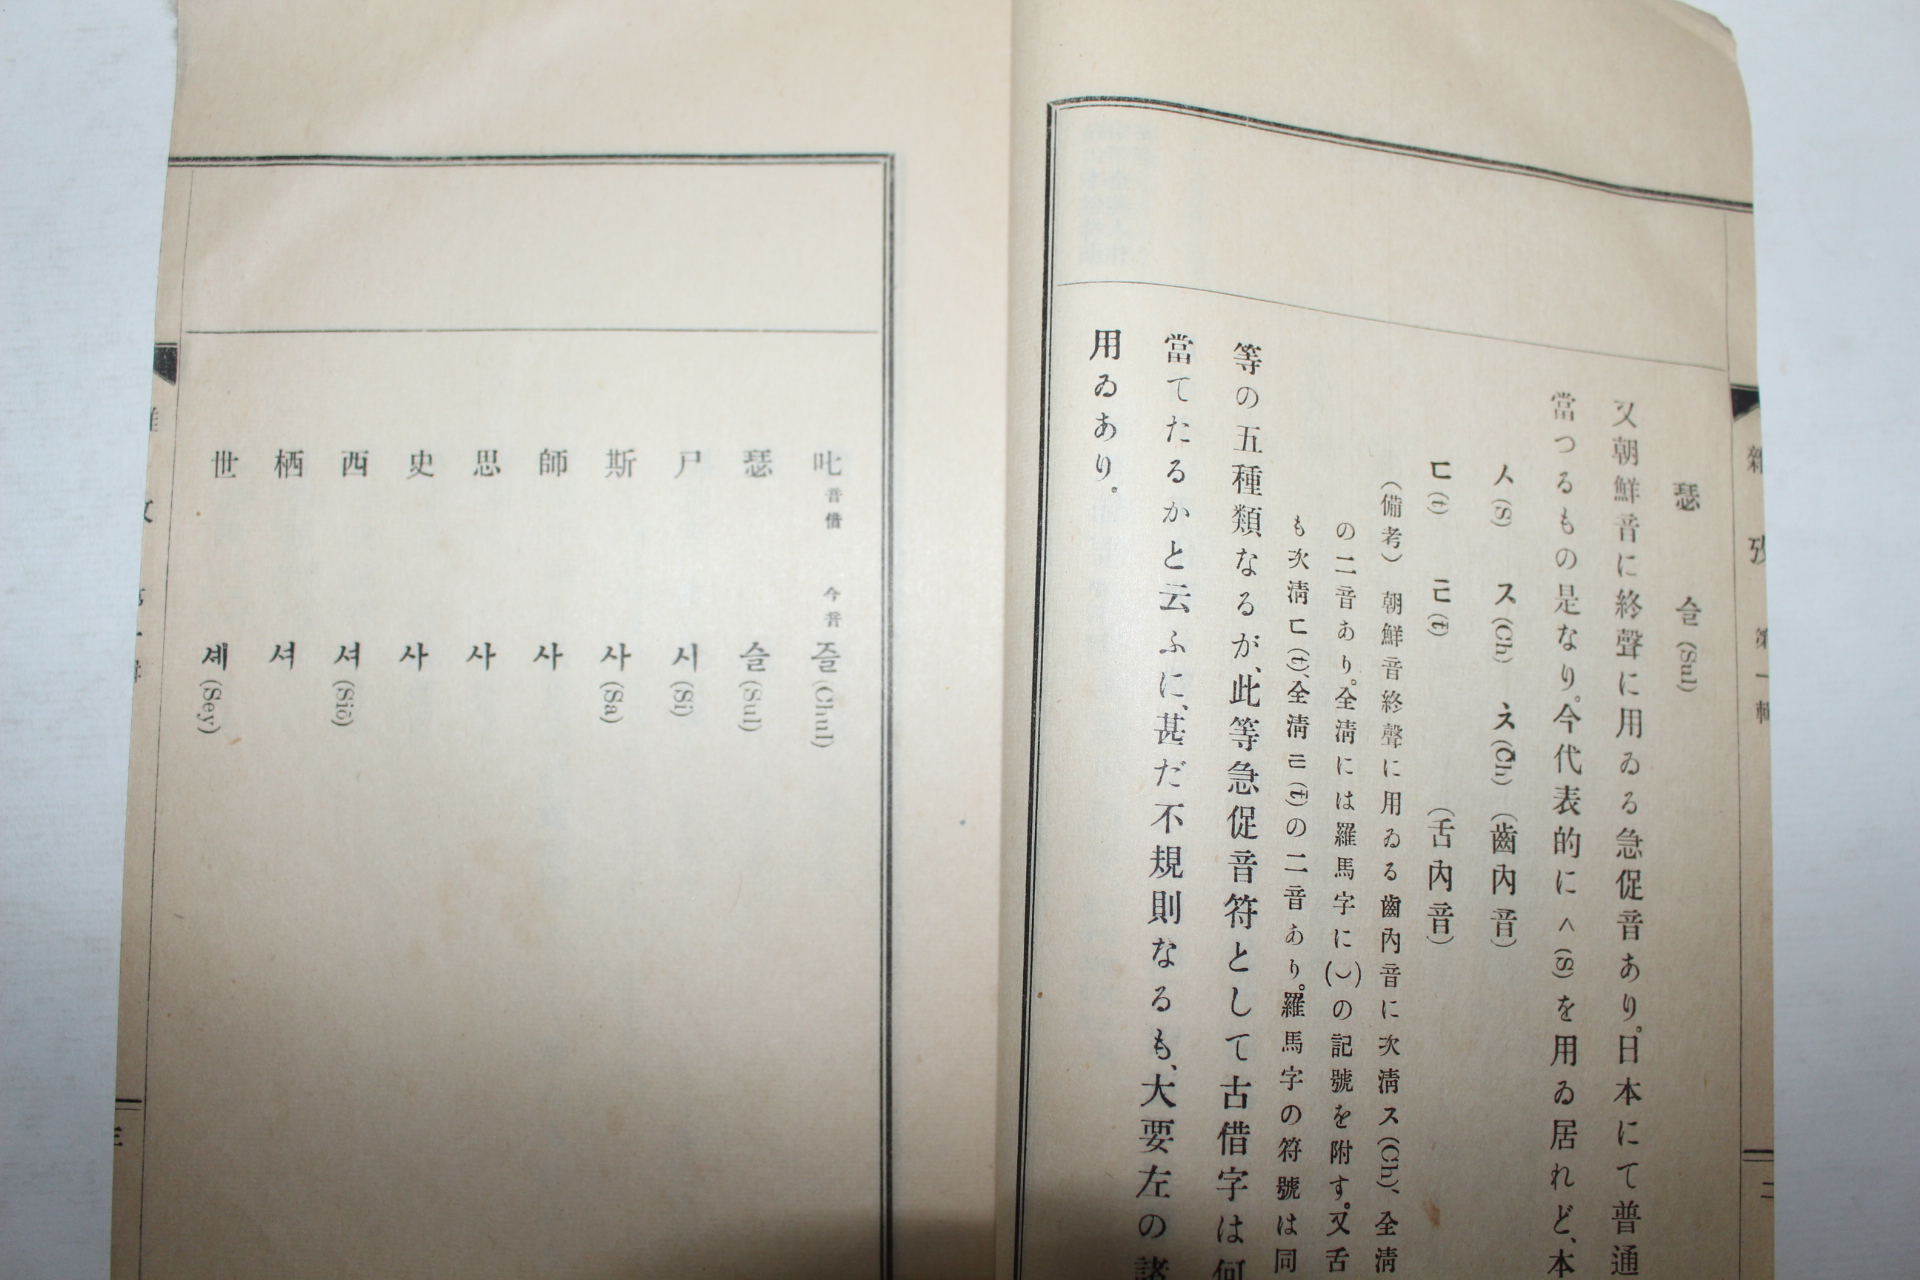 1938년 경성 조선인별 잡고(雜攷) 8책